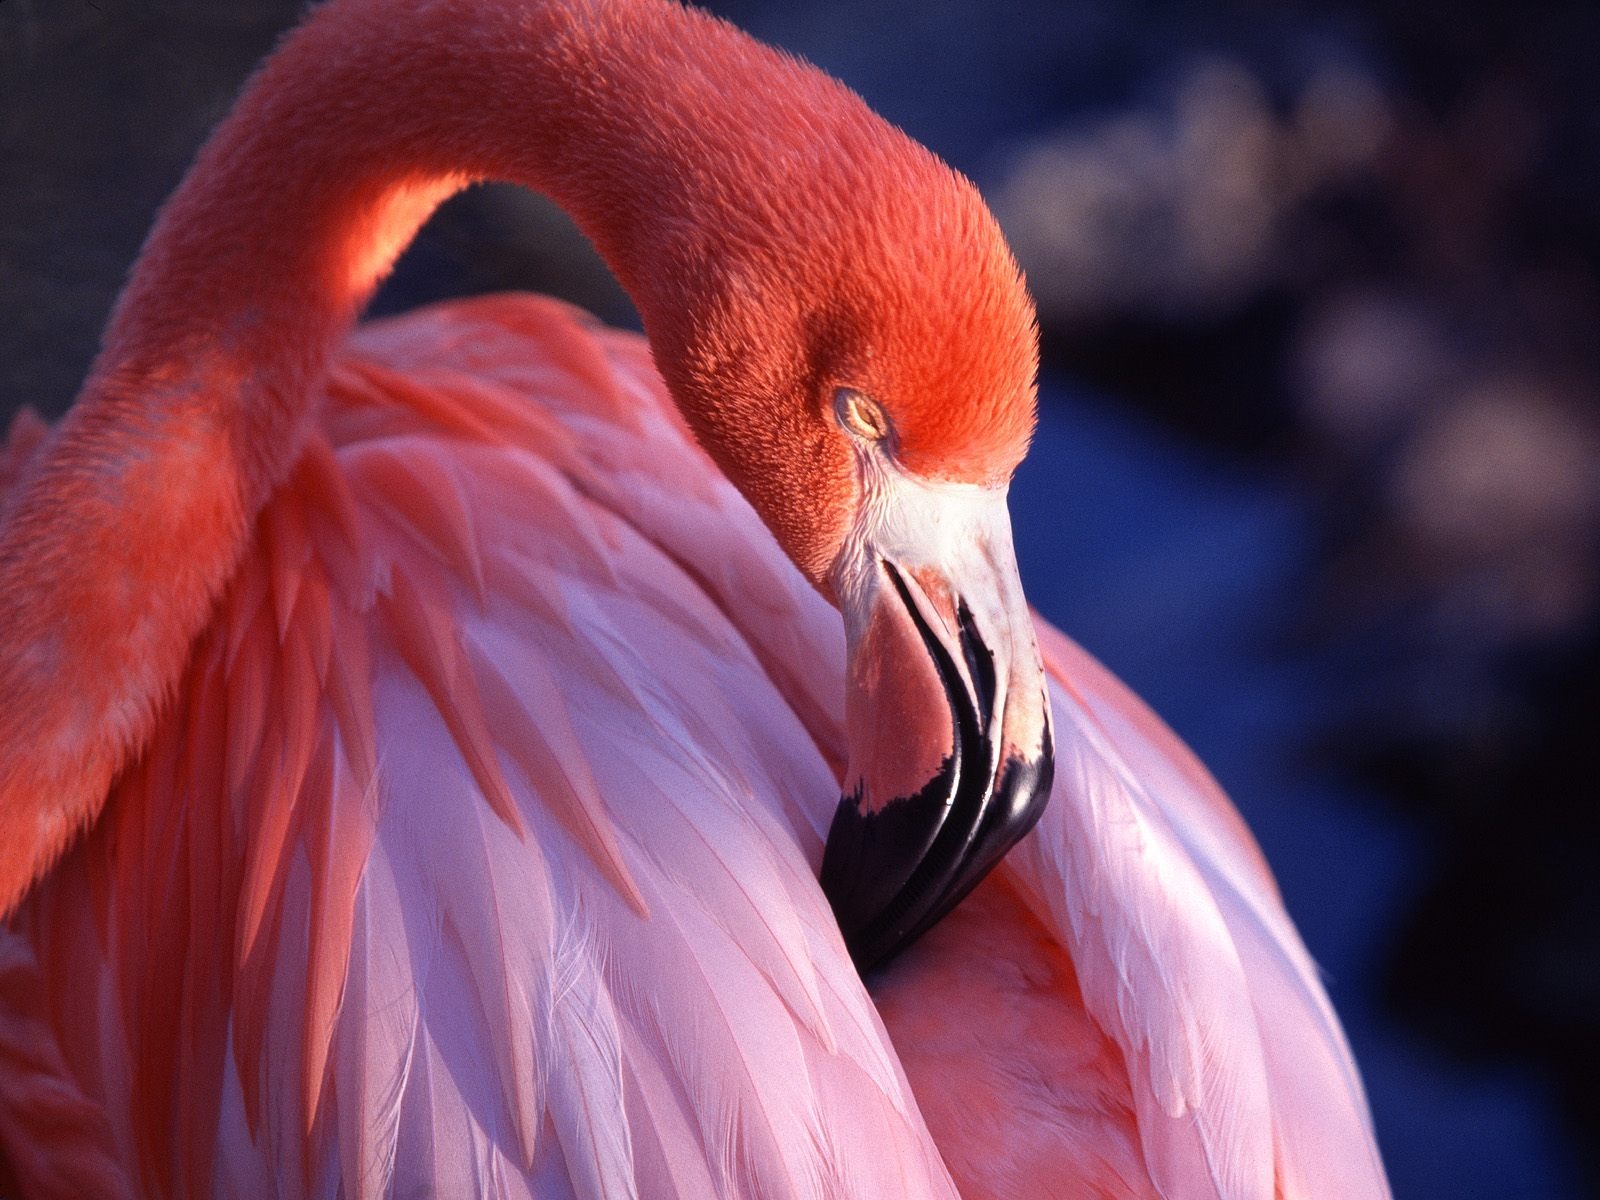 Flamingo Images Hd - HD Wallpaper 